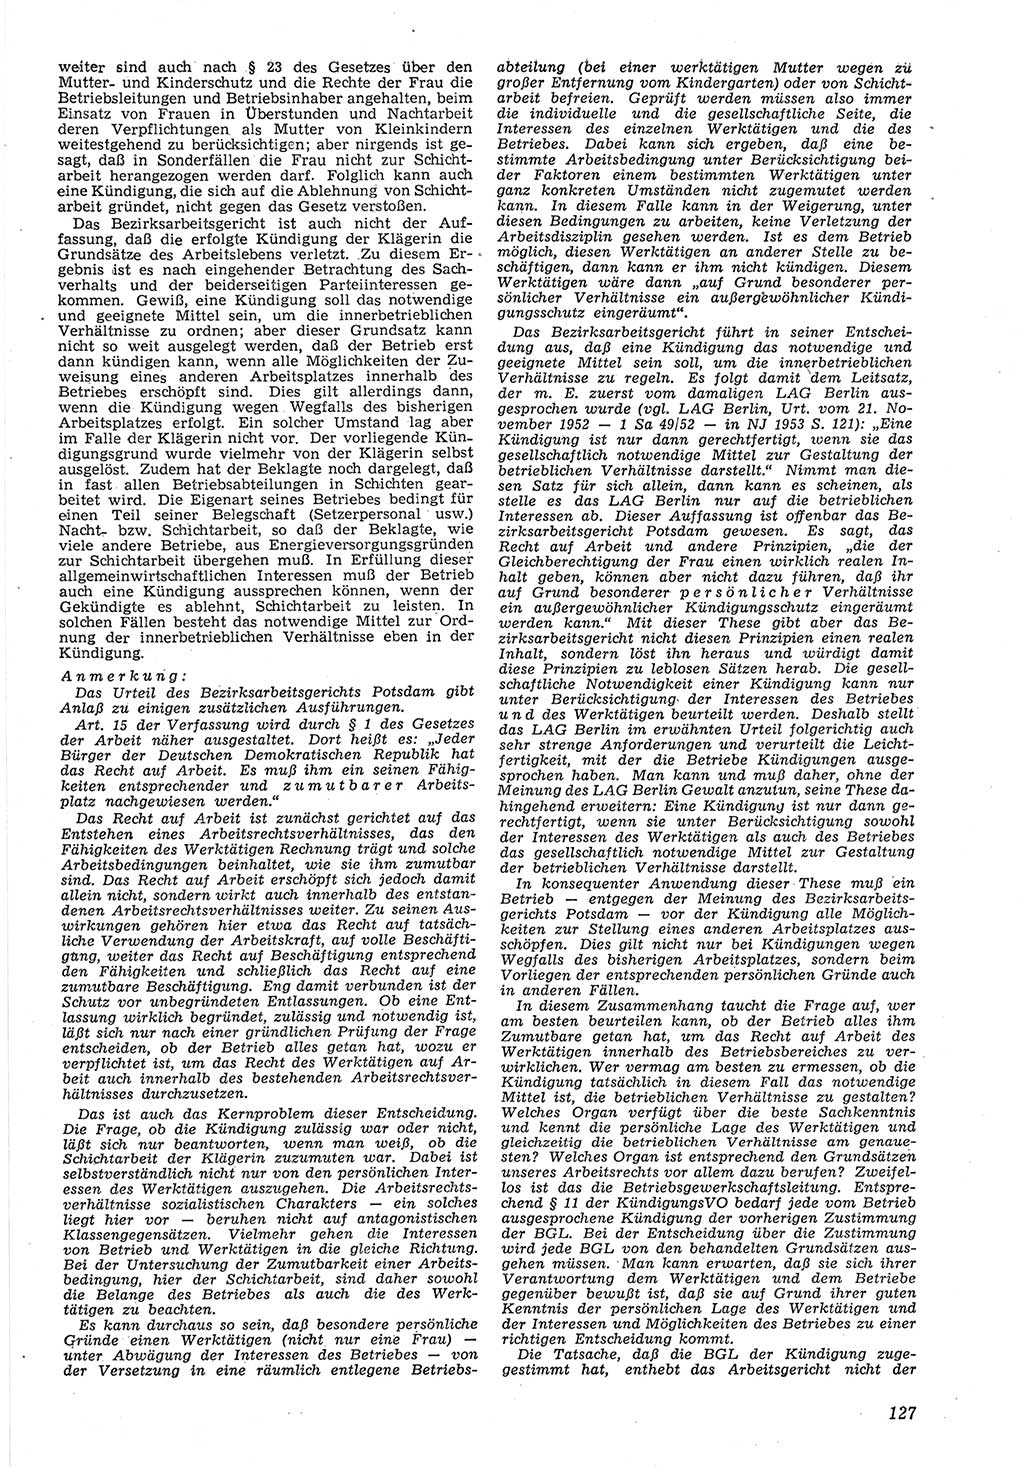 Neue Justiz (NJ), Zeitschrift für Recht und Rechtswissenschaft [Deutsche Demokratische Republik (DDR)], 8. Jahrgang 1954, Seite 127 (NJ DDR 1954, S. 127)